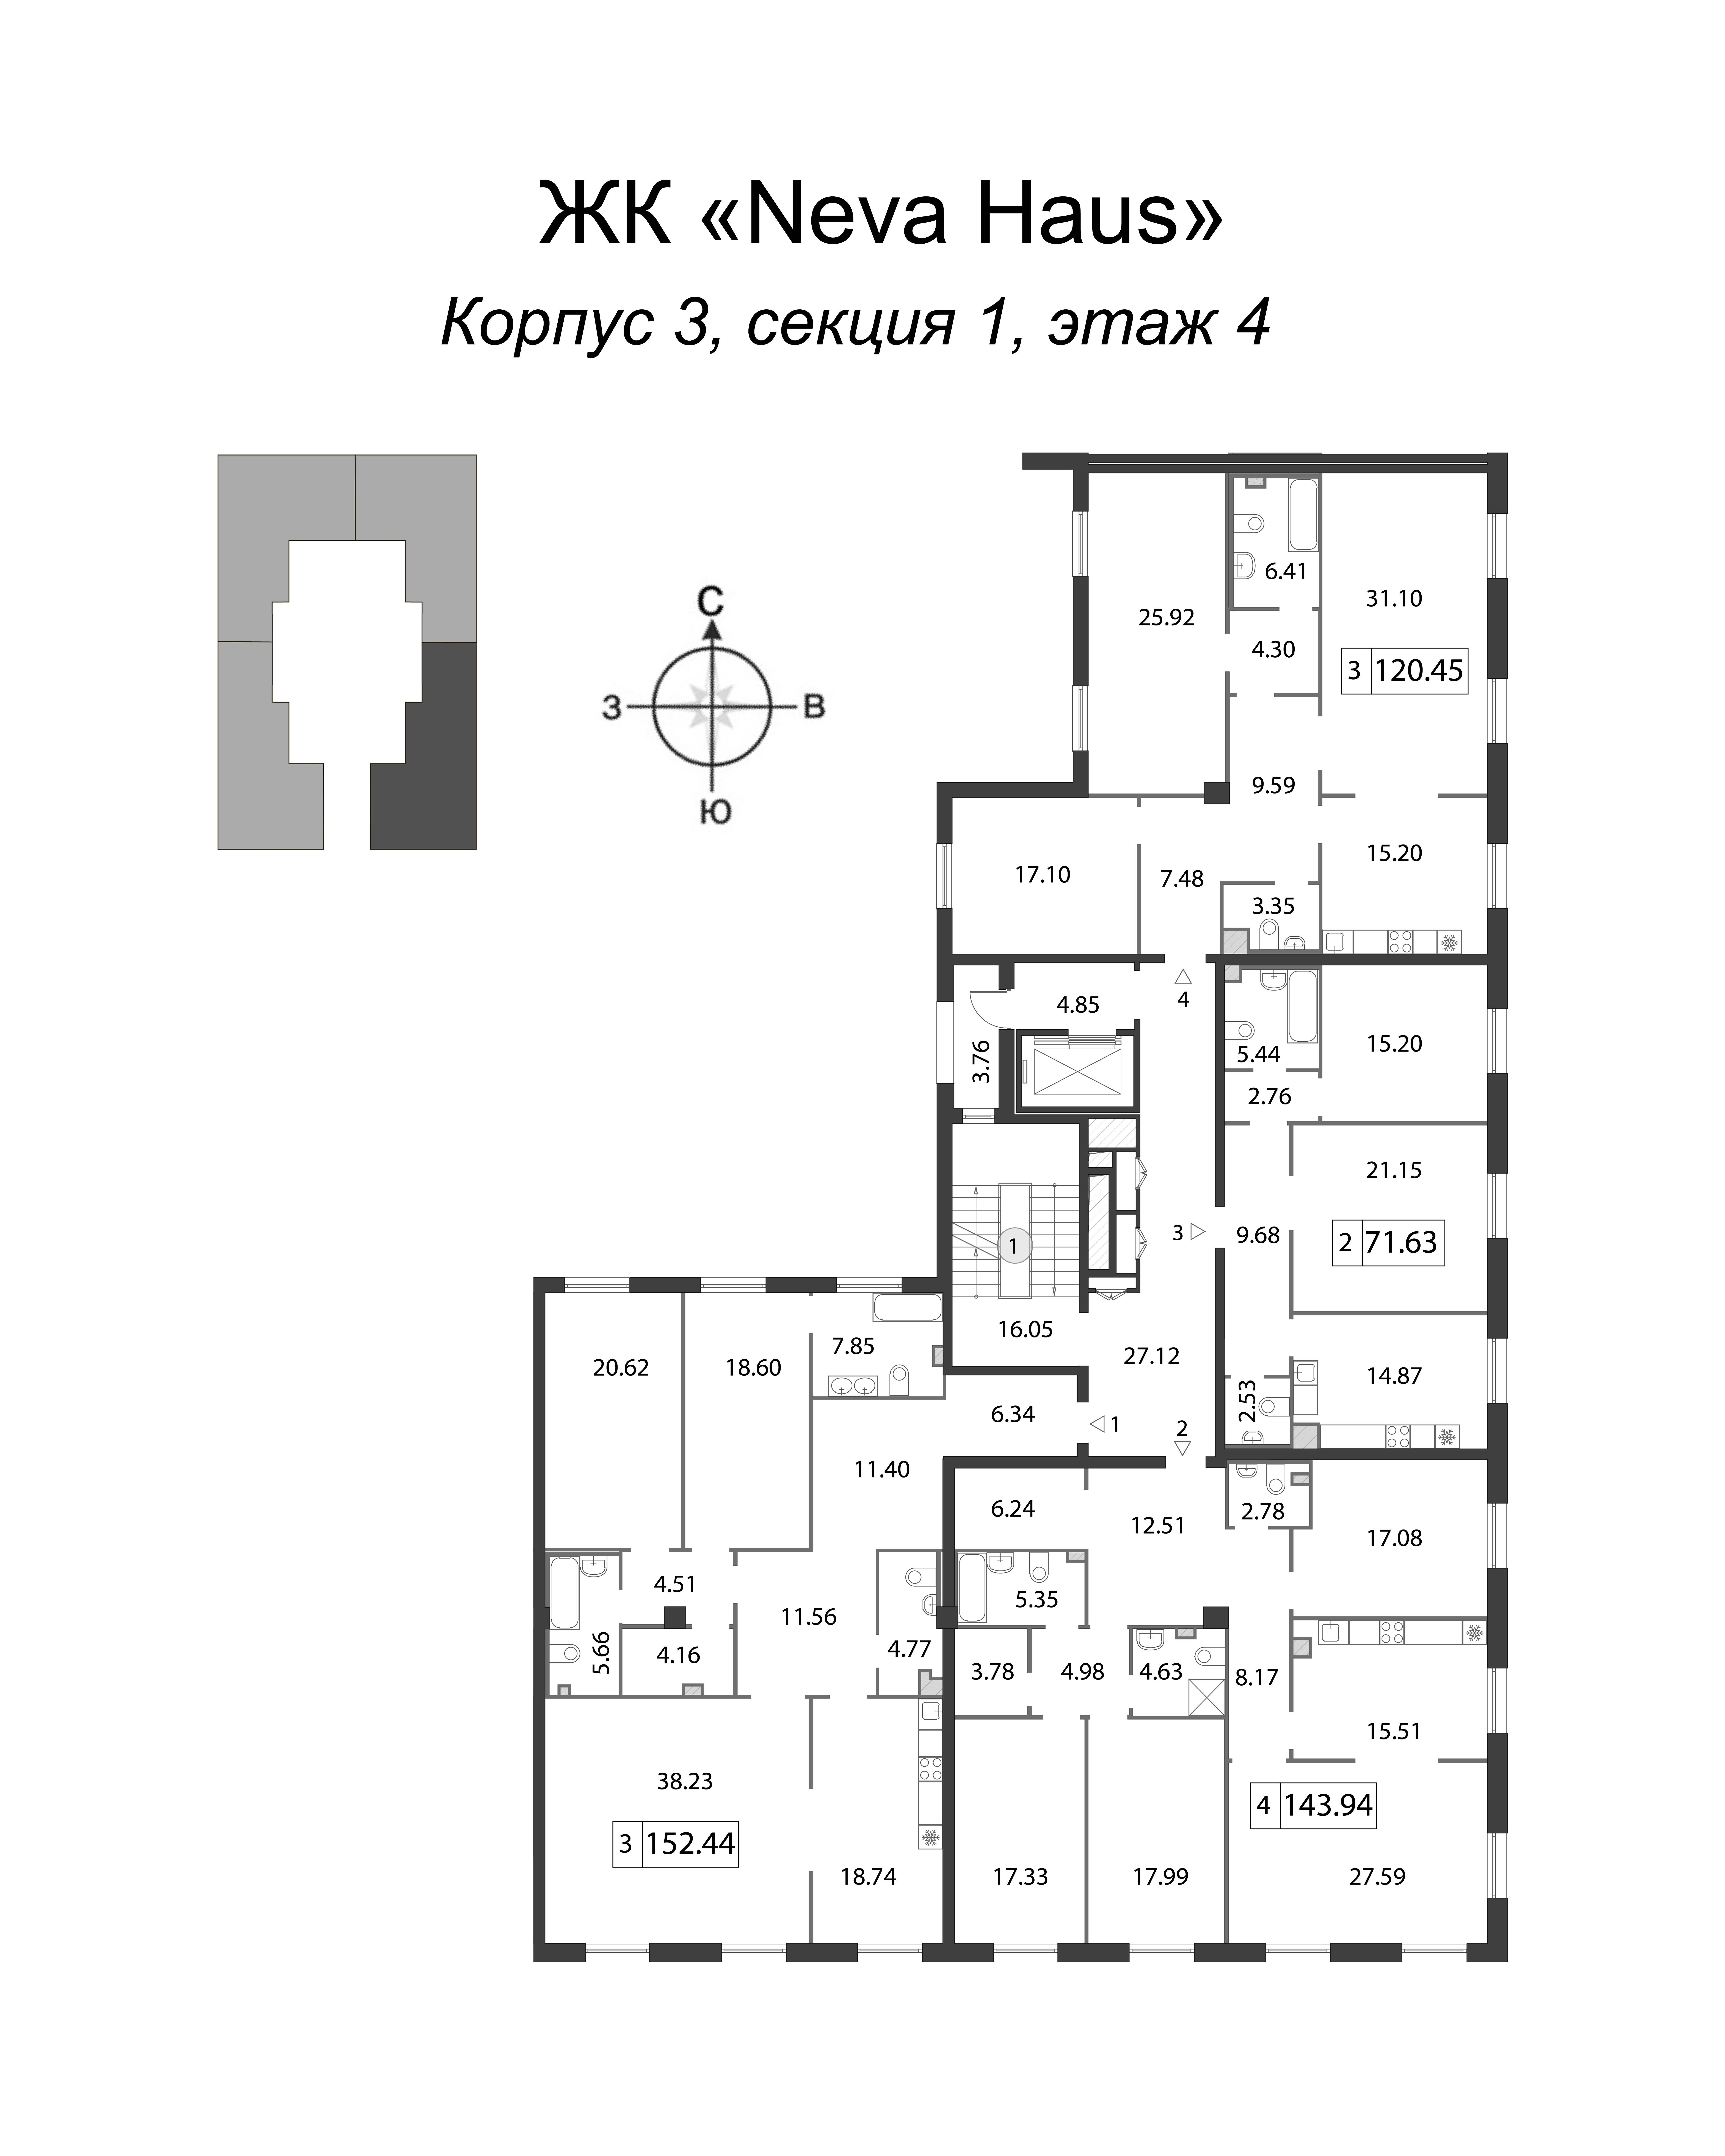 4-комнатная (Евро) квартира, 152.6 м² в ЖК "Neva Haus" - планировка этажа